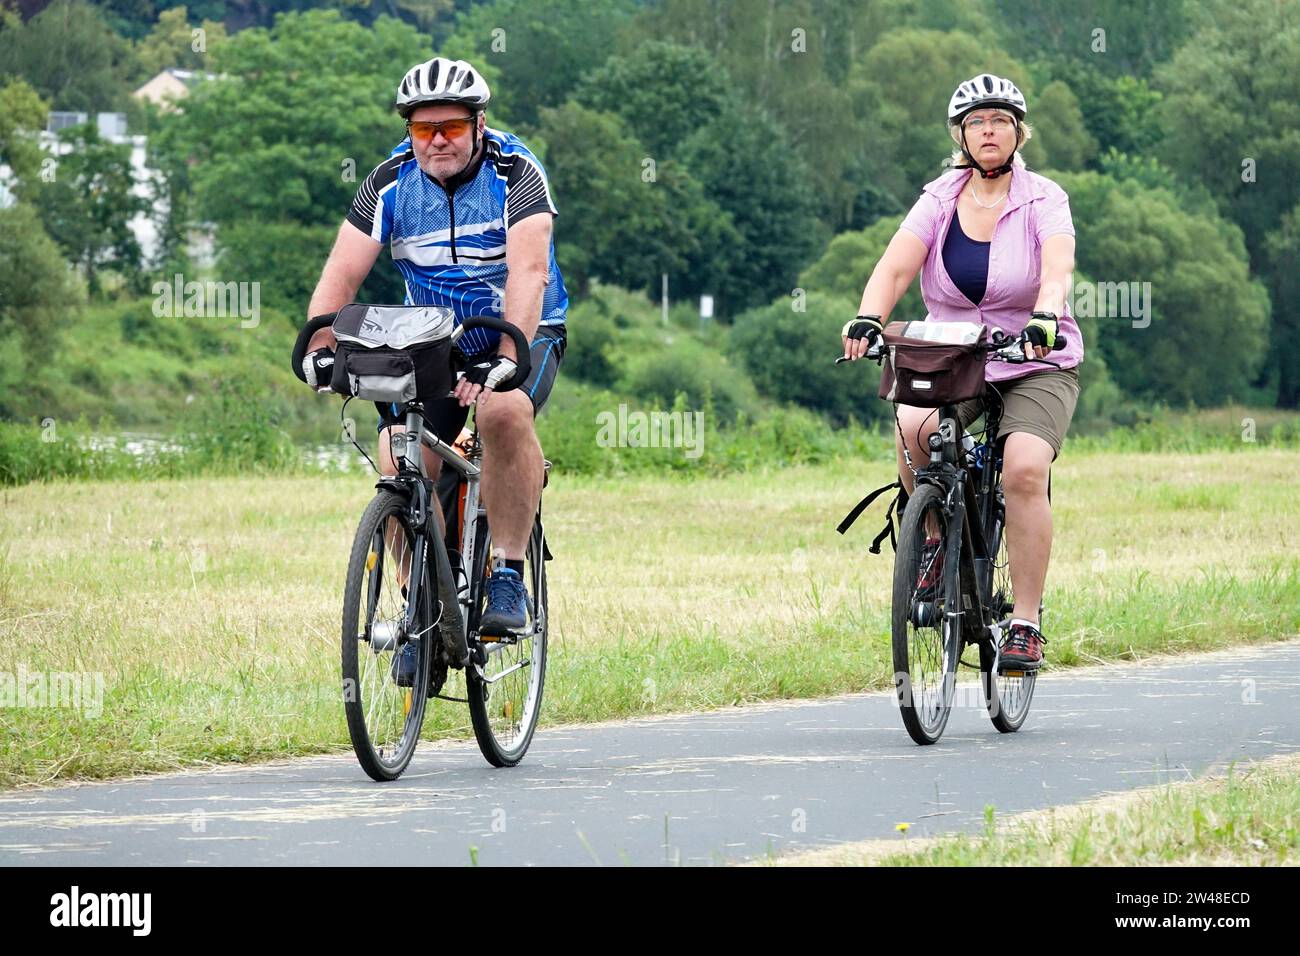 Ein Paar, ein Mann und eine Frau, fahren mit dem Fahrrad auf einem Radweg in einer Landschaft mit gemähter Wiese Stockfoto